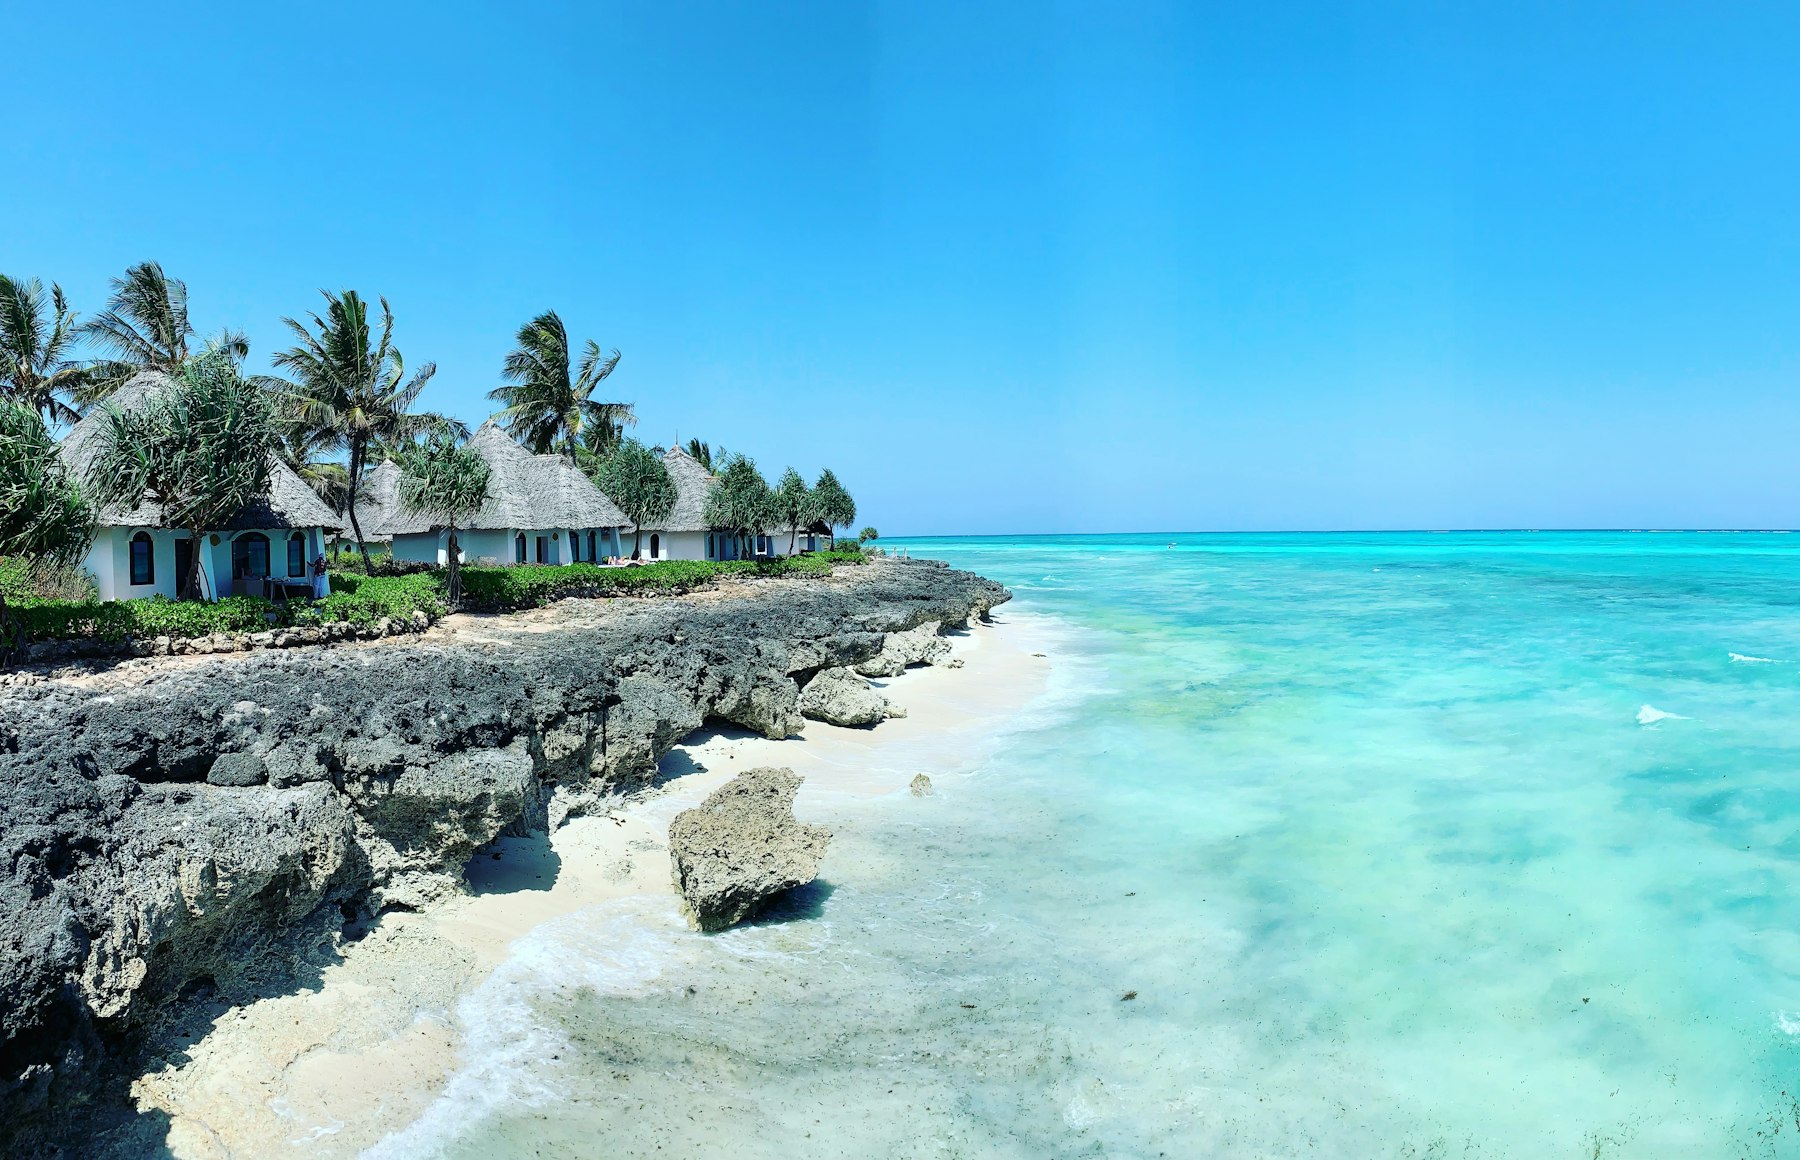 Casette affacciate sul mare cristallino di Zanzibar